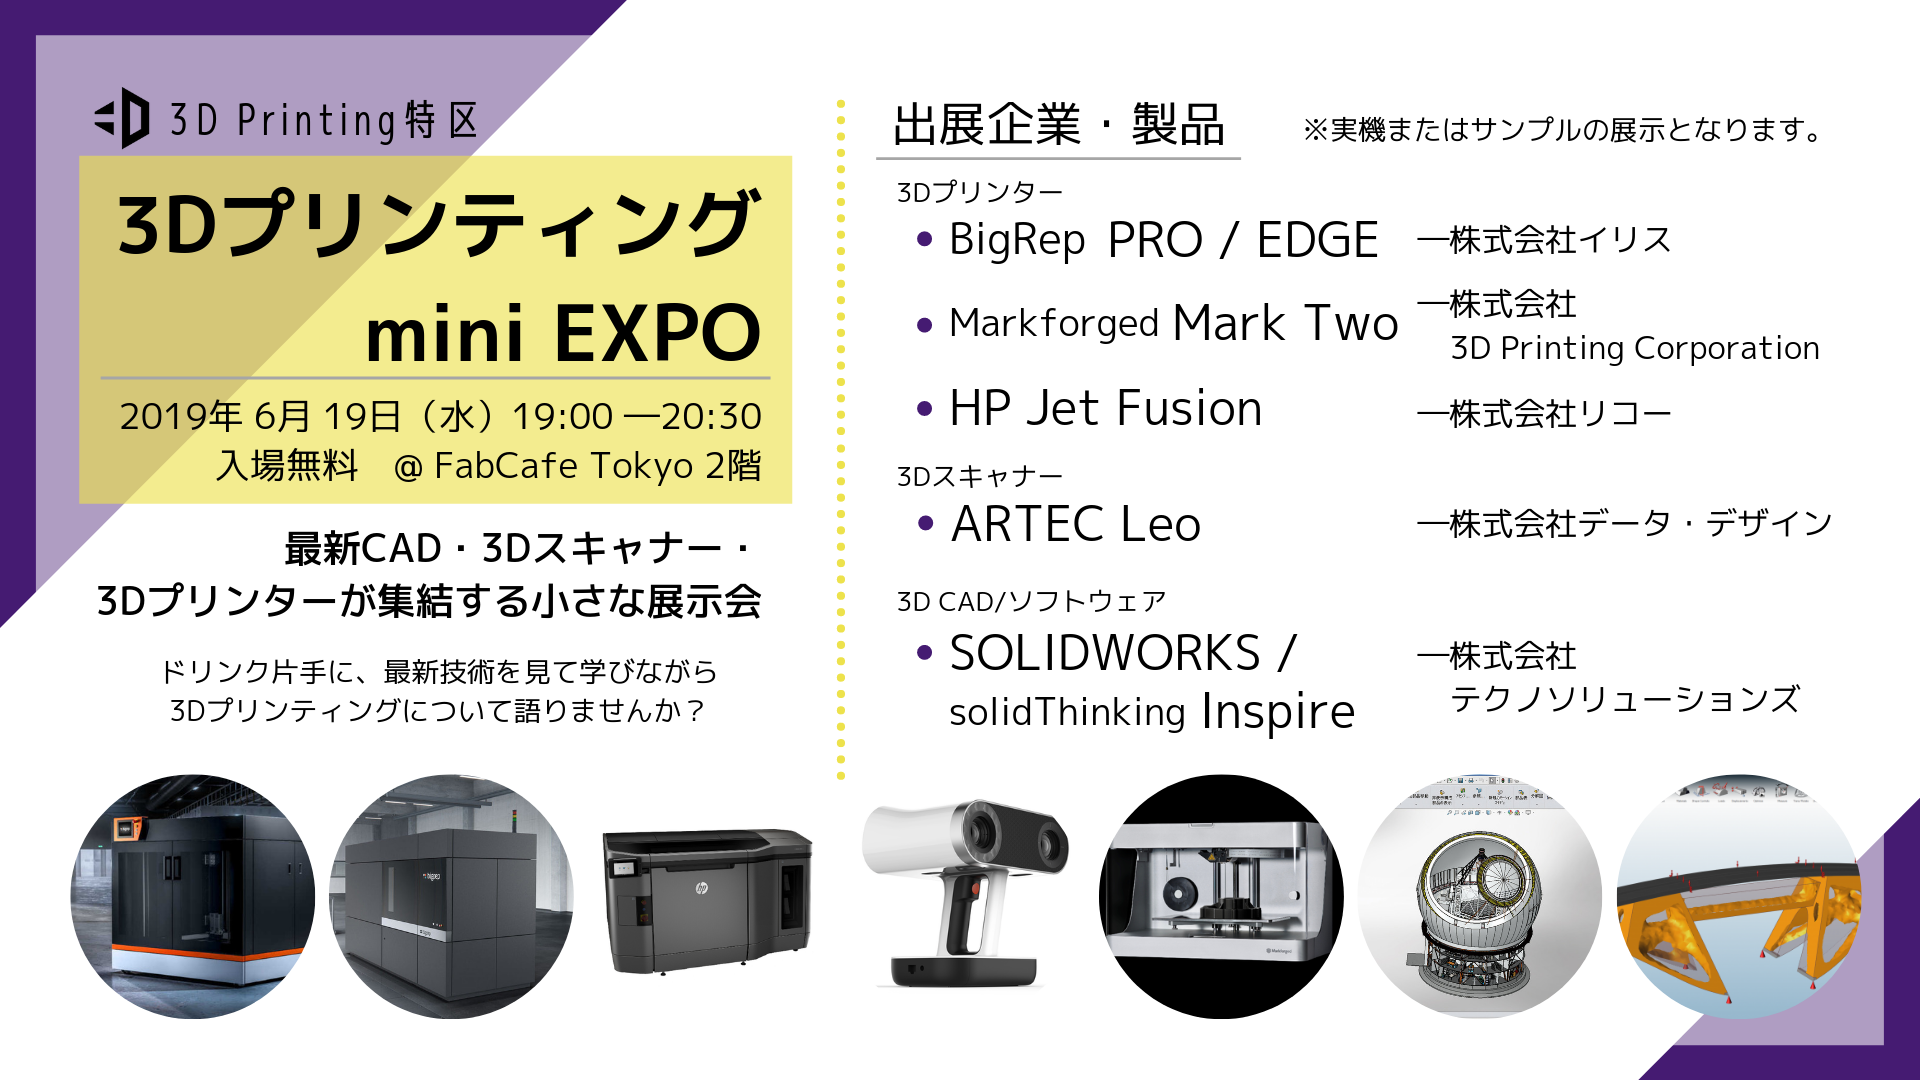 6 19開催 3dプリンティングmini Expo 最新cad 3dスキャナー 3dプリンターが集結する小さな展示会 3d Printing特区 3d Printing Corporation